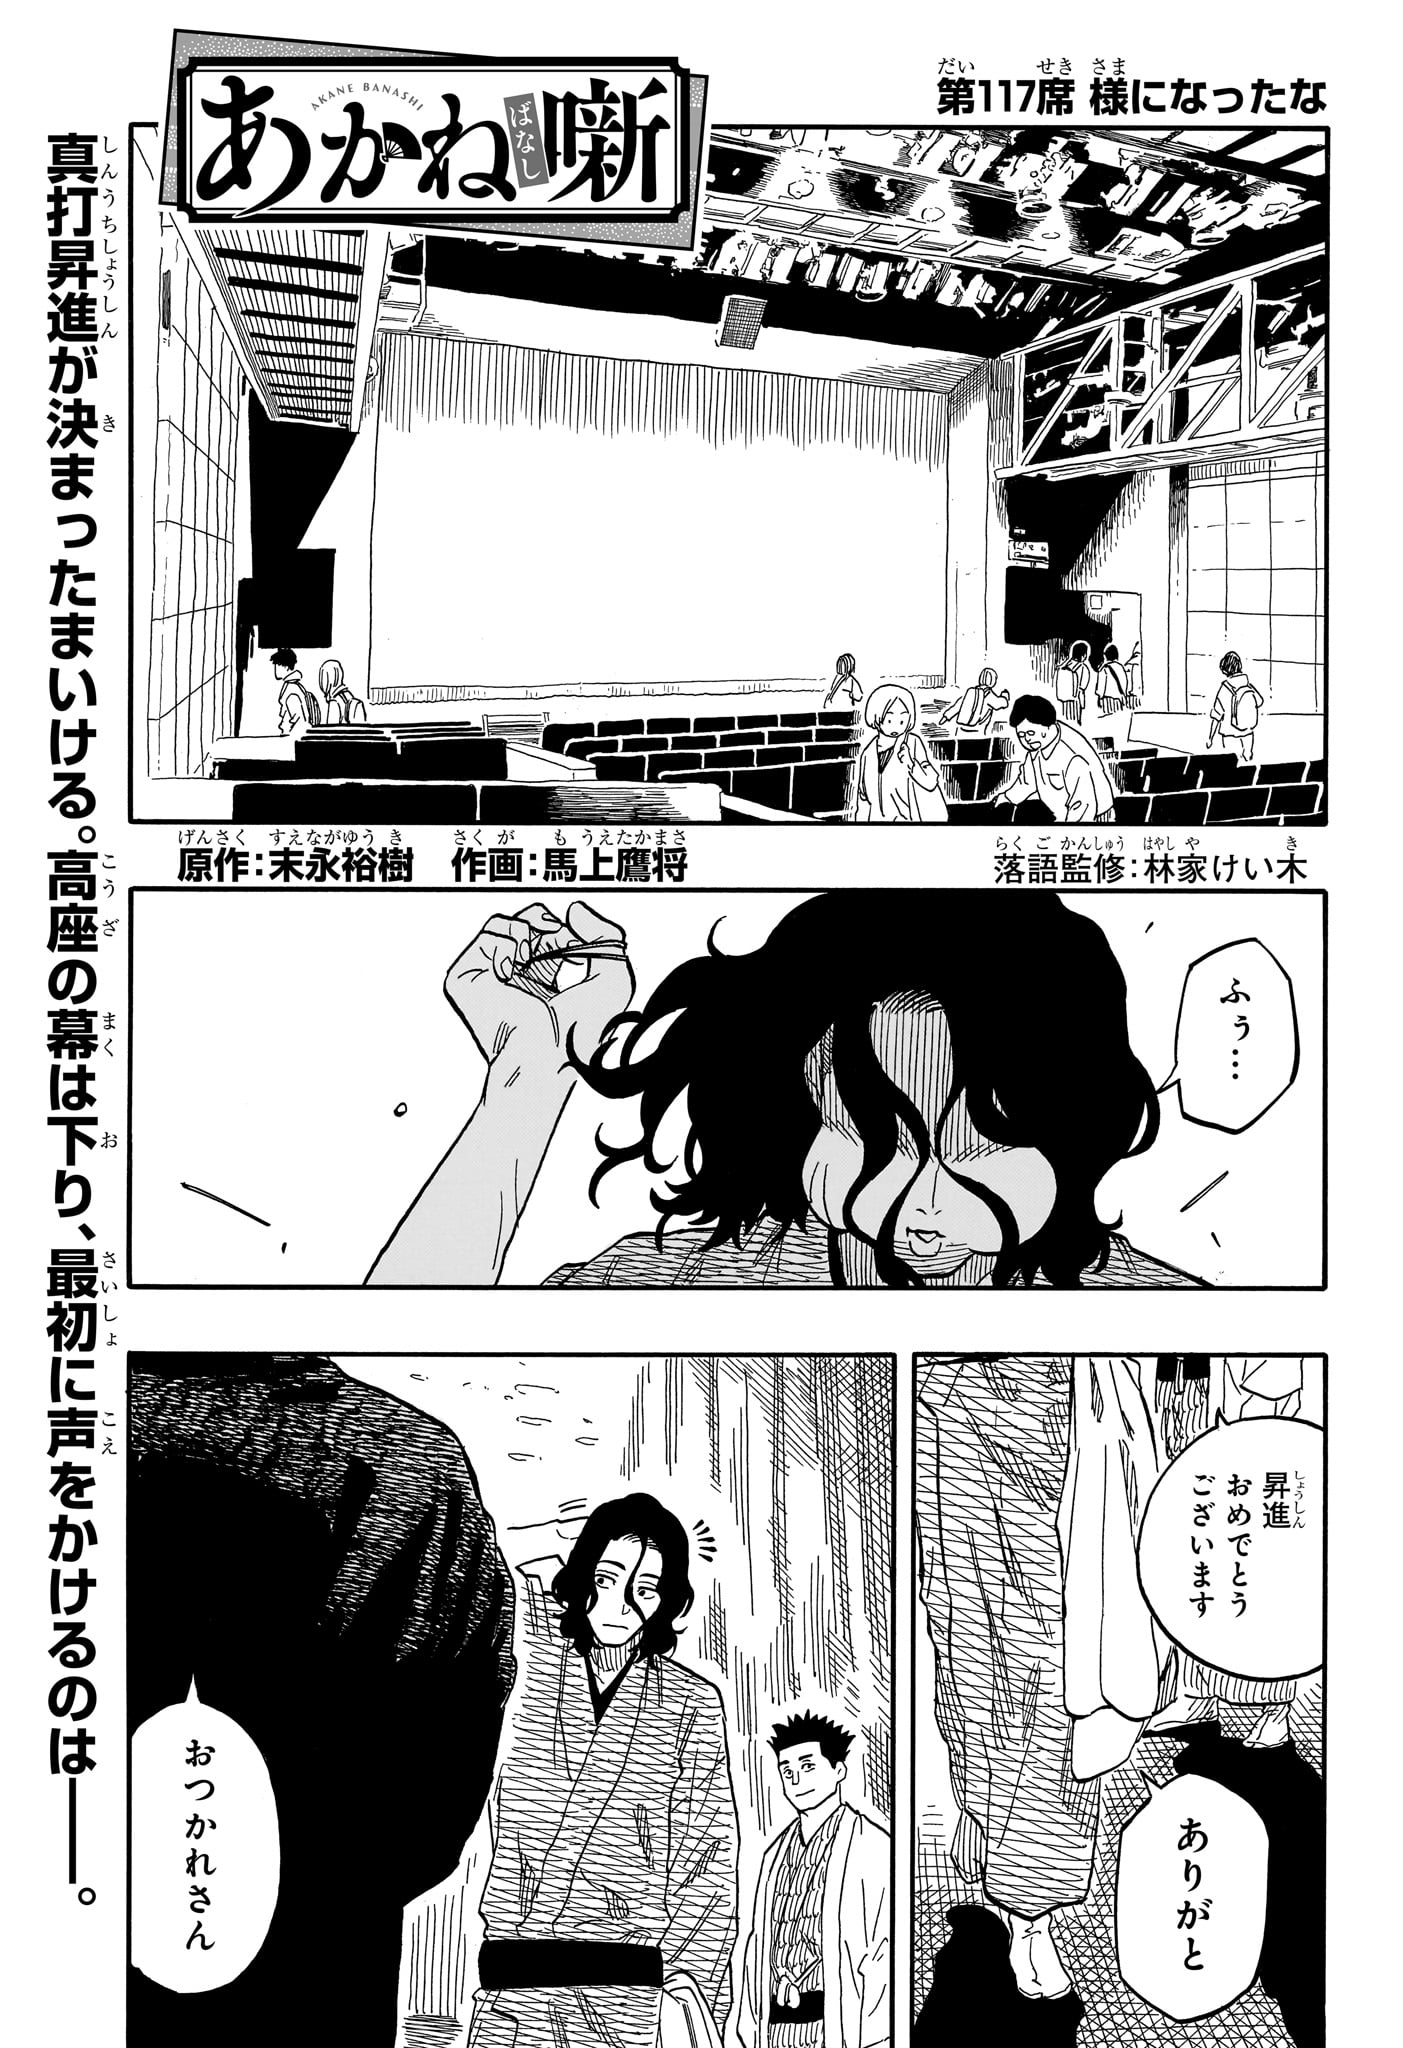 Akane-Banashi - Chapter 117 - Page 1